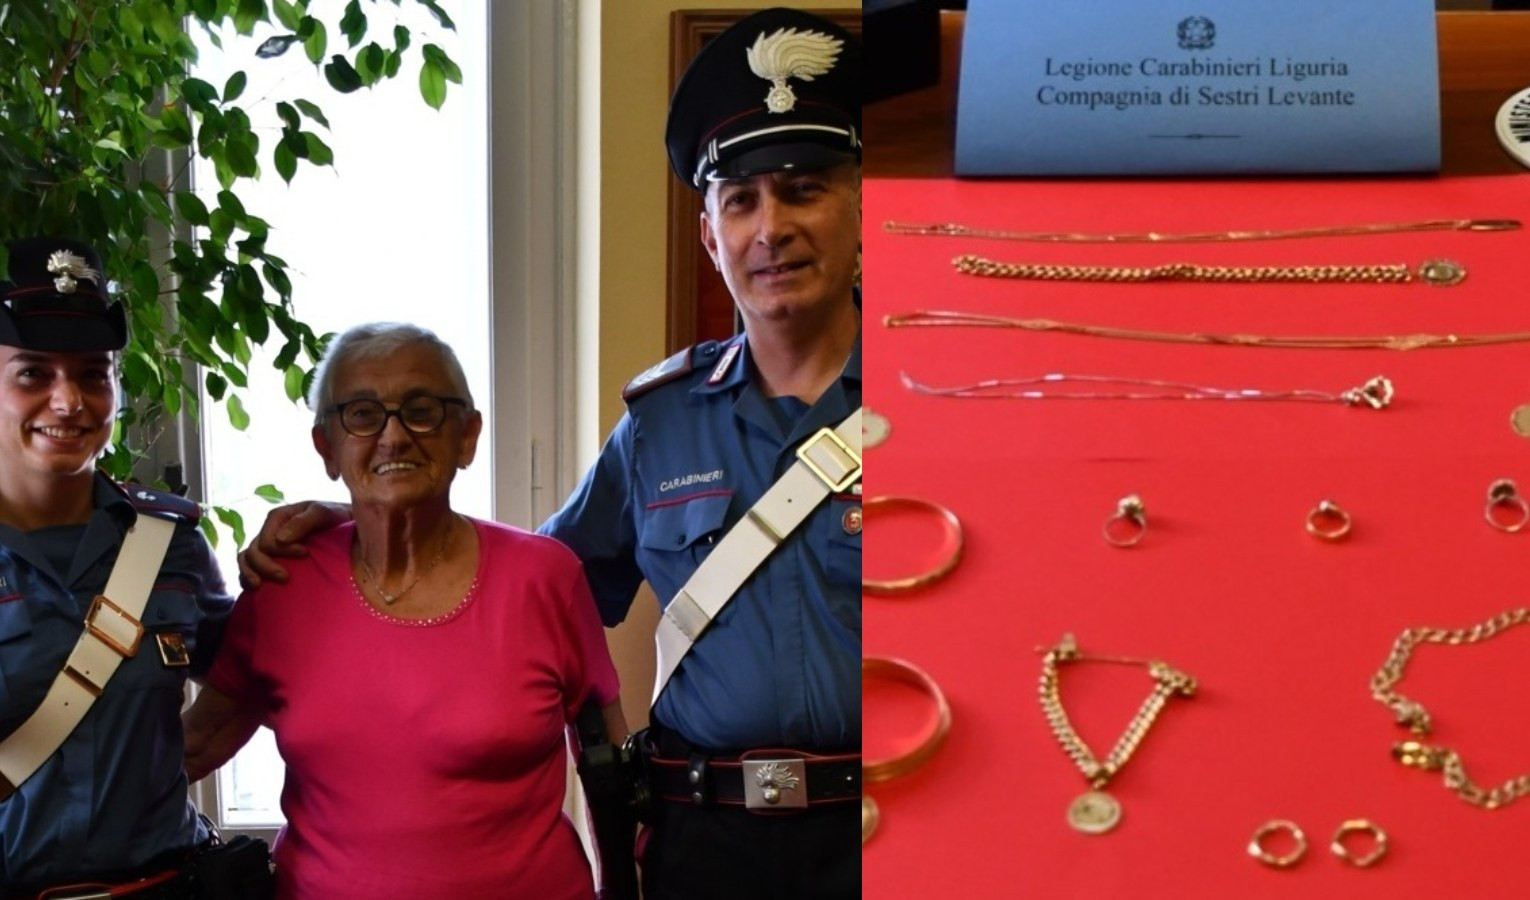 Anziana truffata a Sestri Levante, arrestati i colpevoli in Friuli